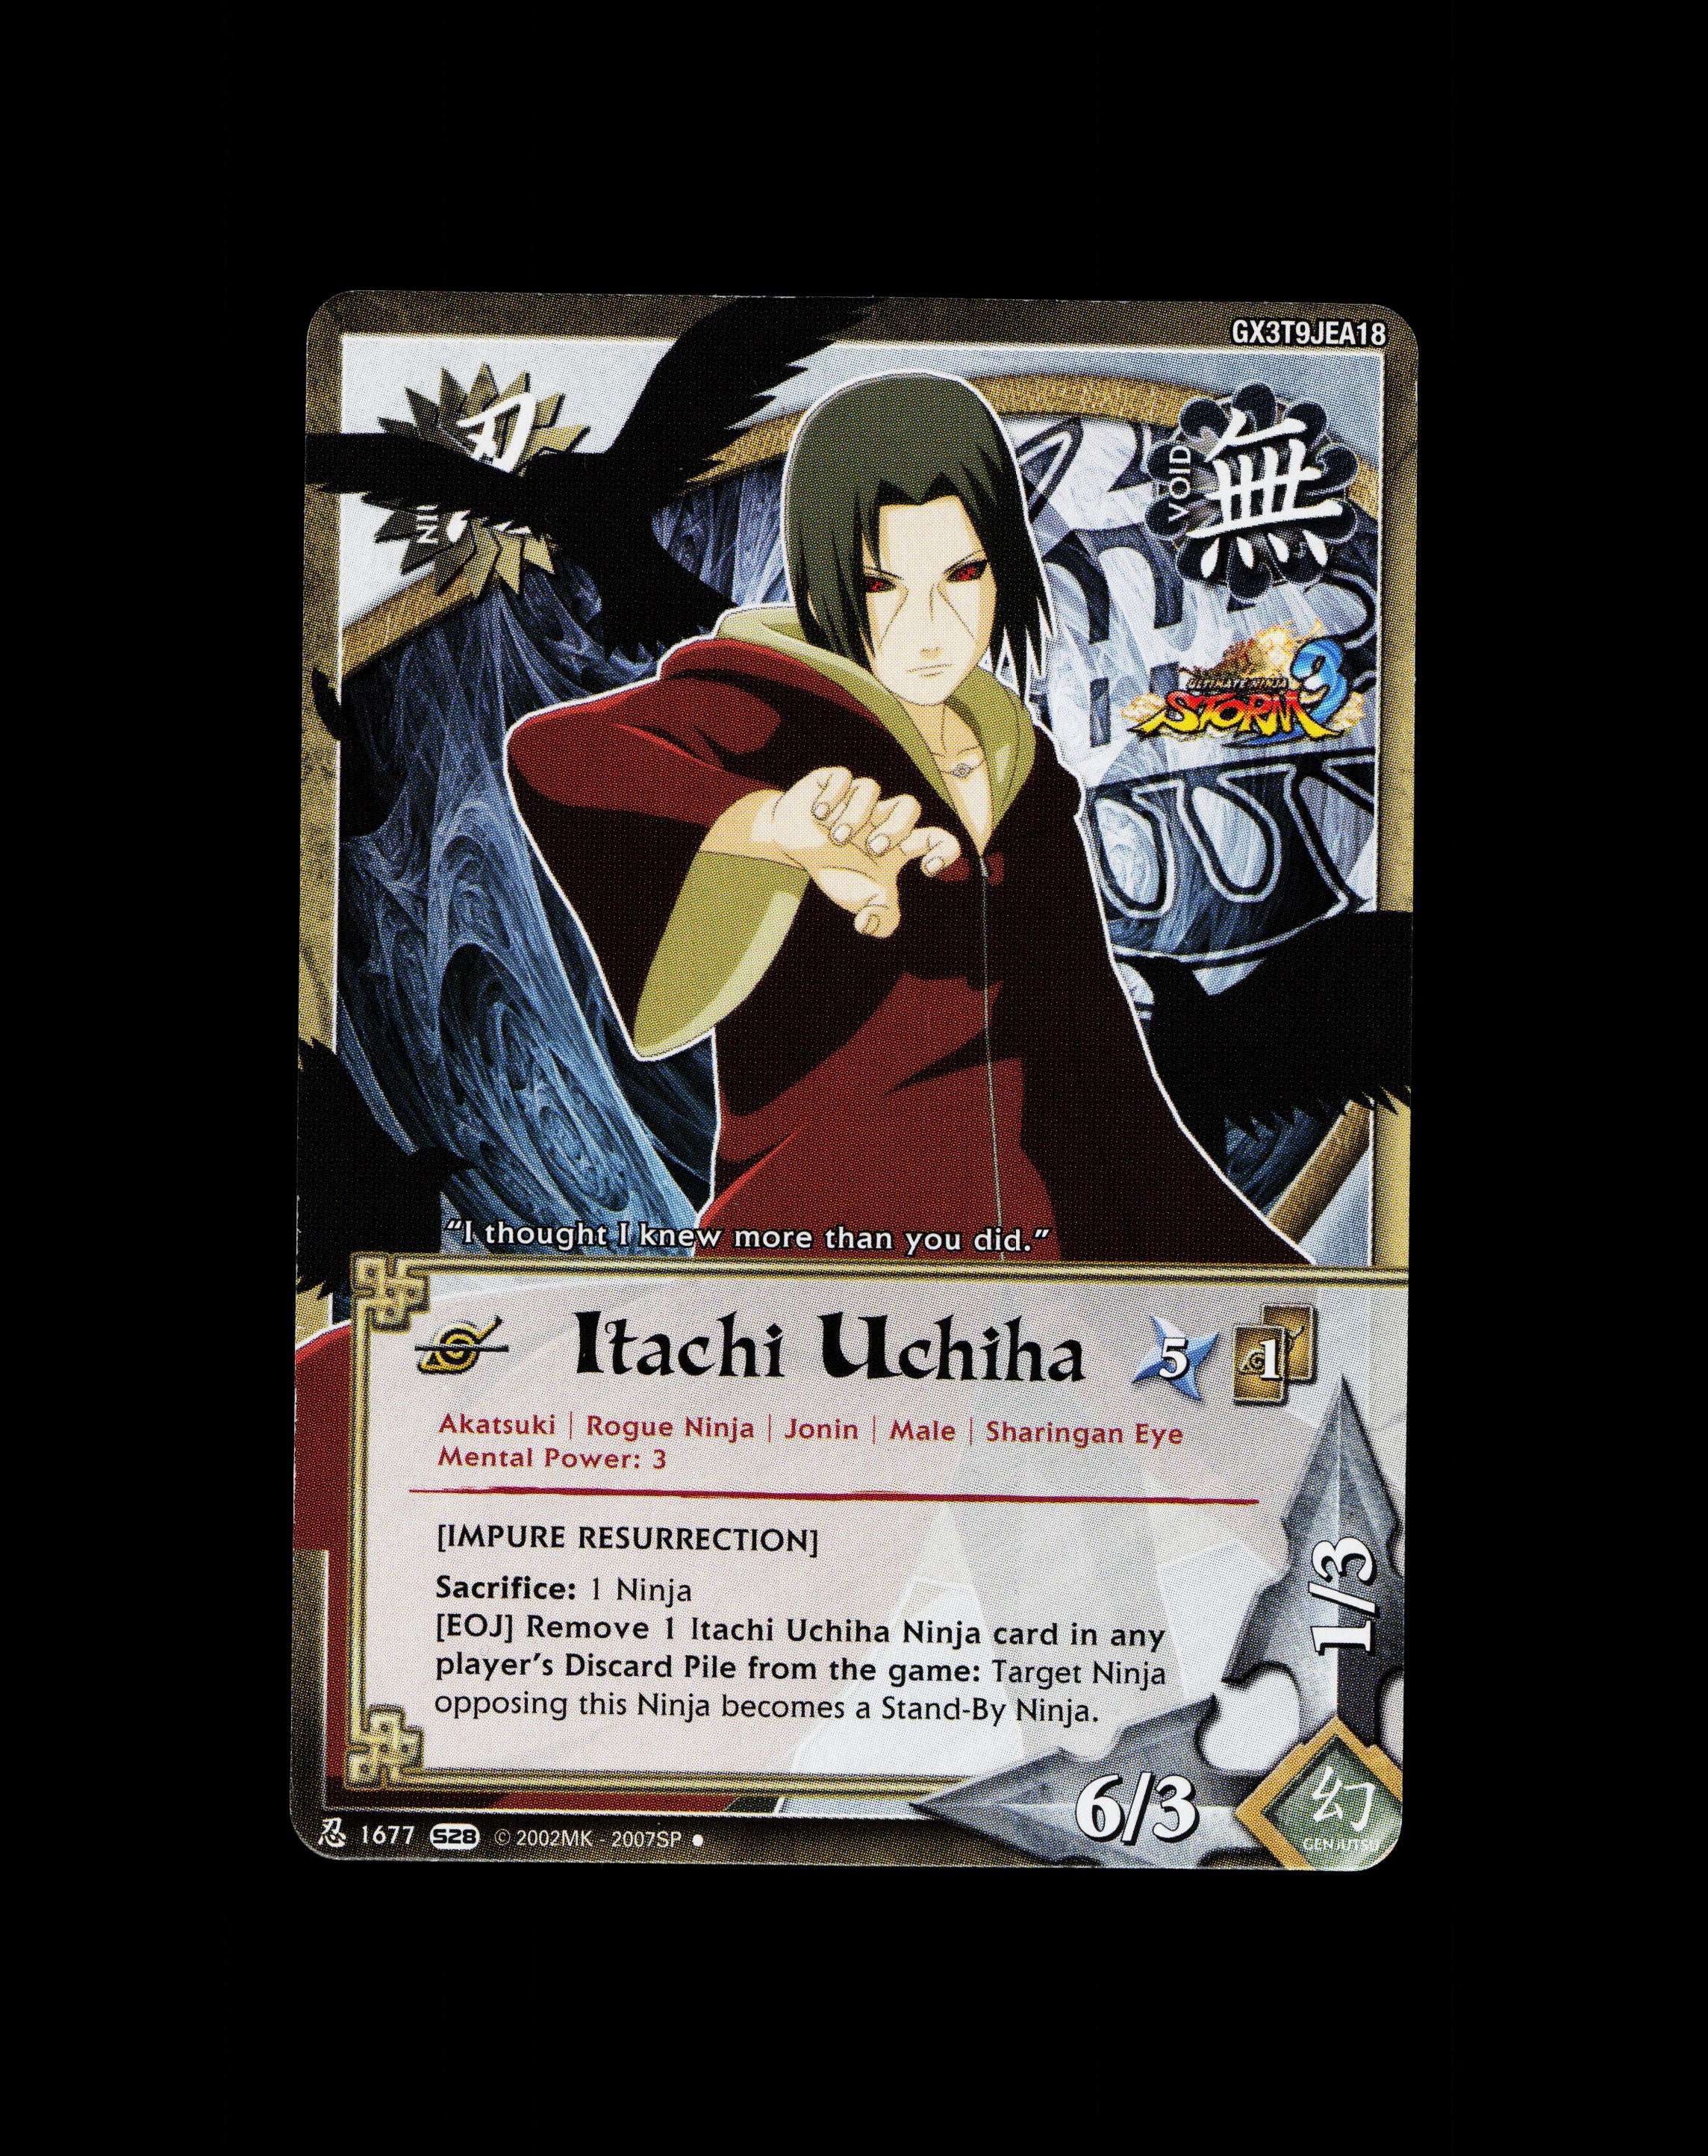 itachi uchiha resurrected